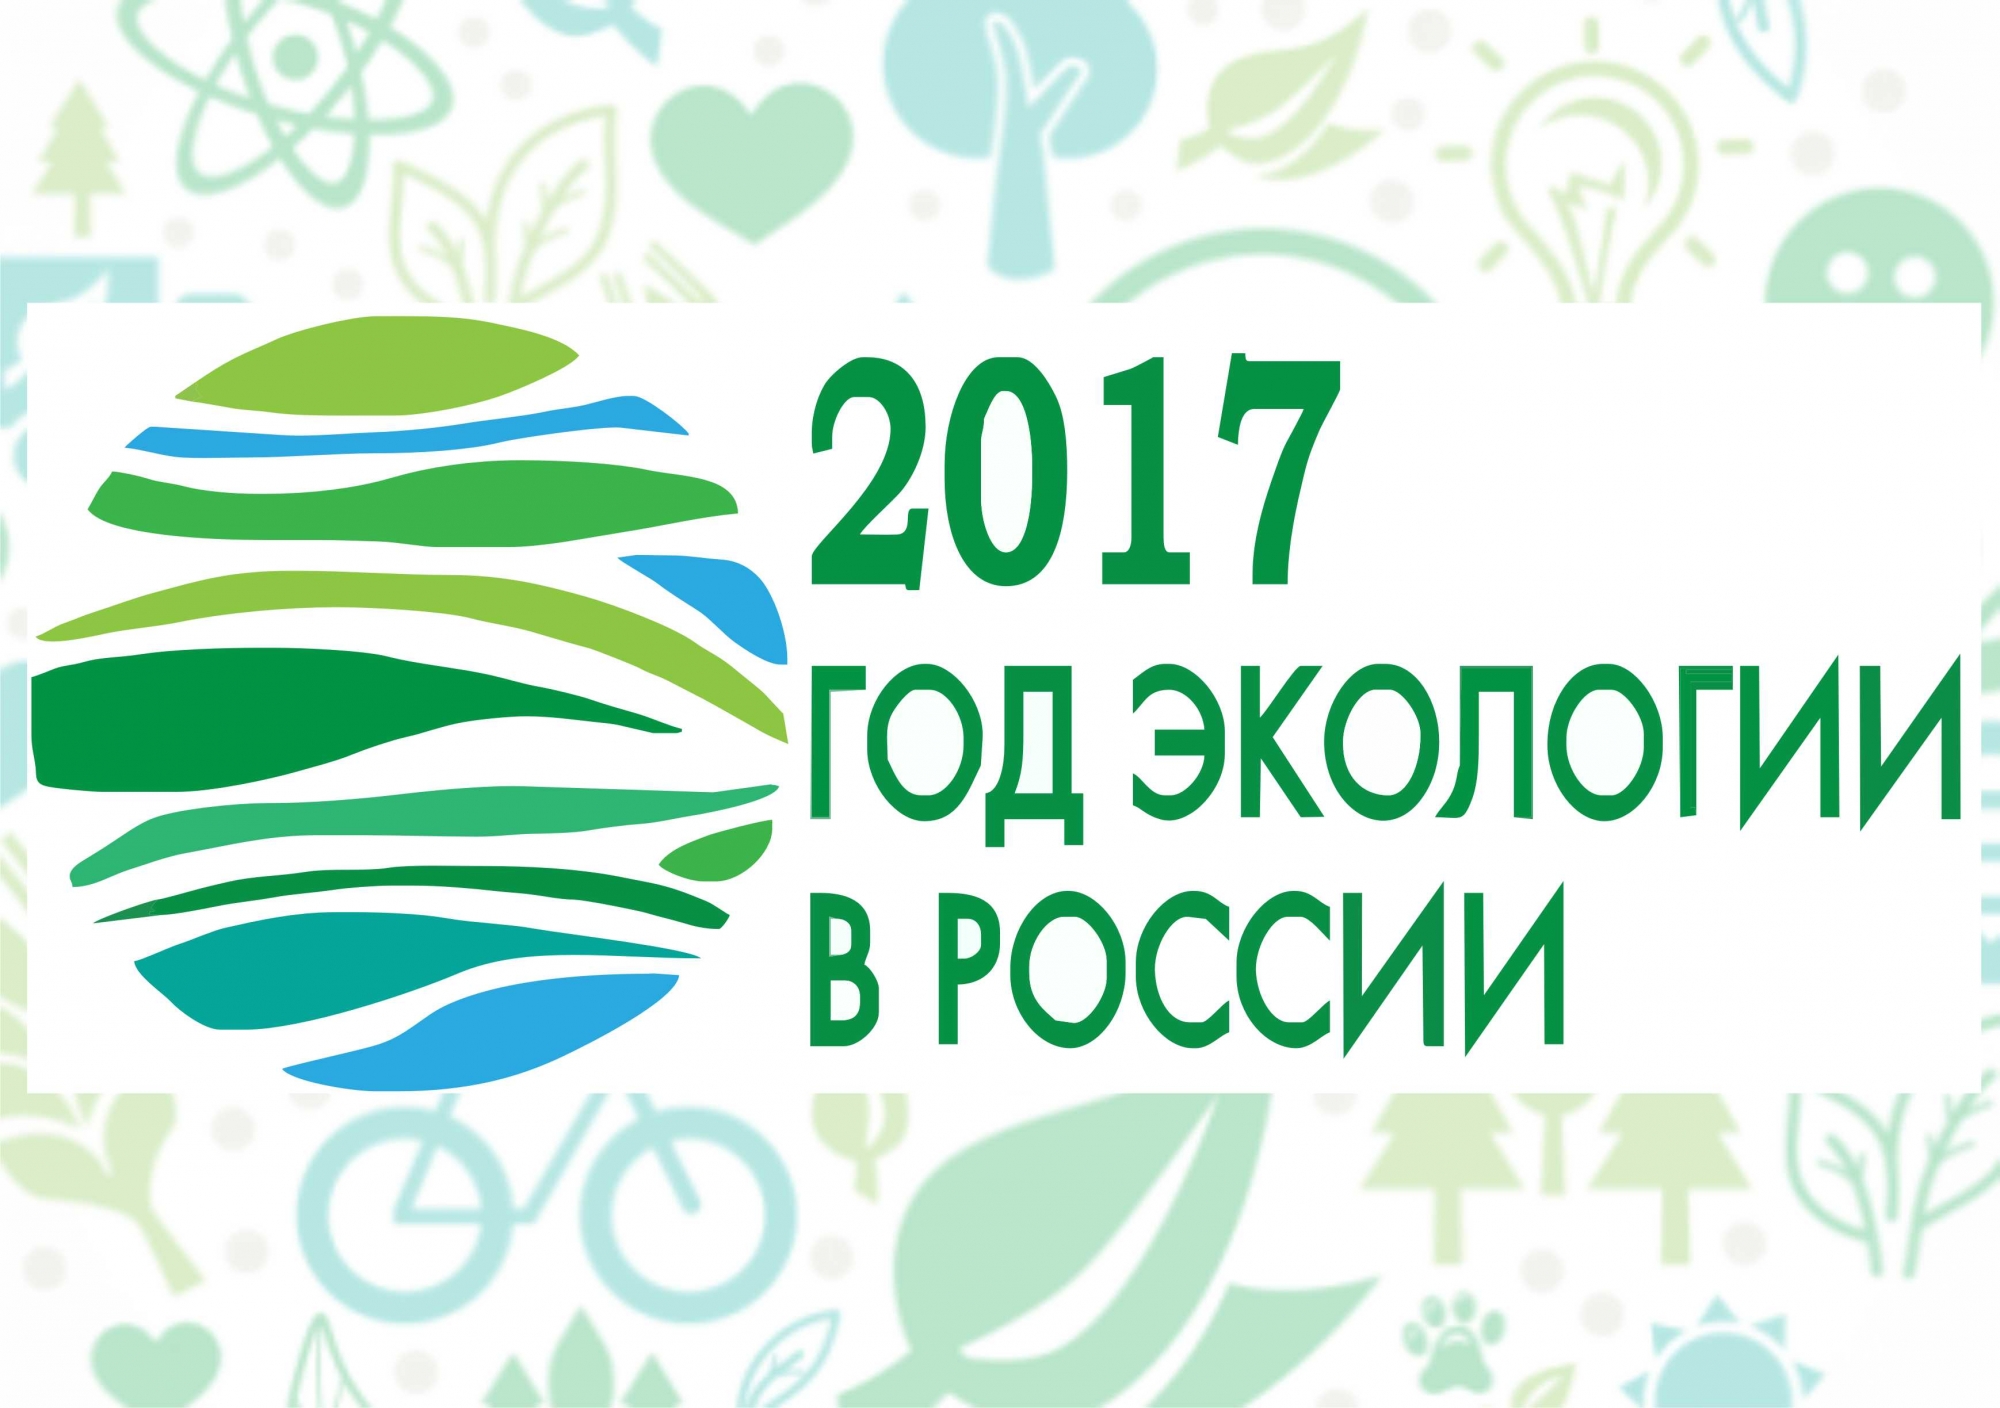 2017 год  - Год экологии в России